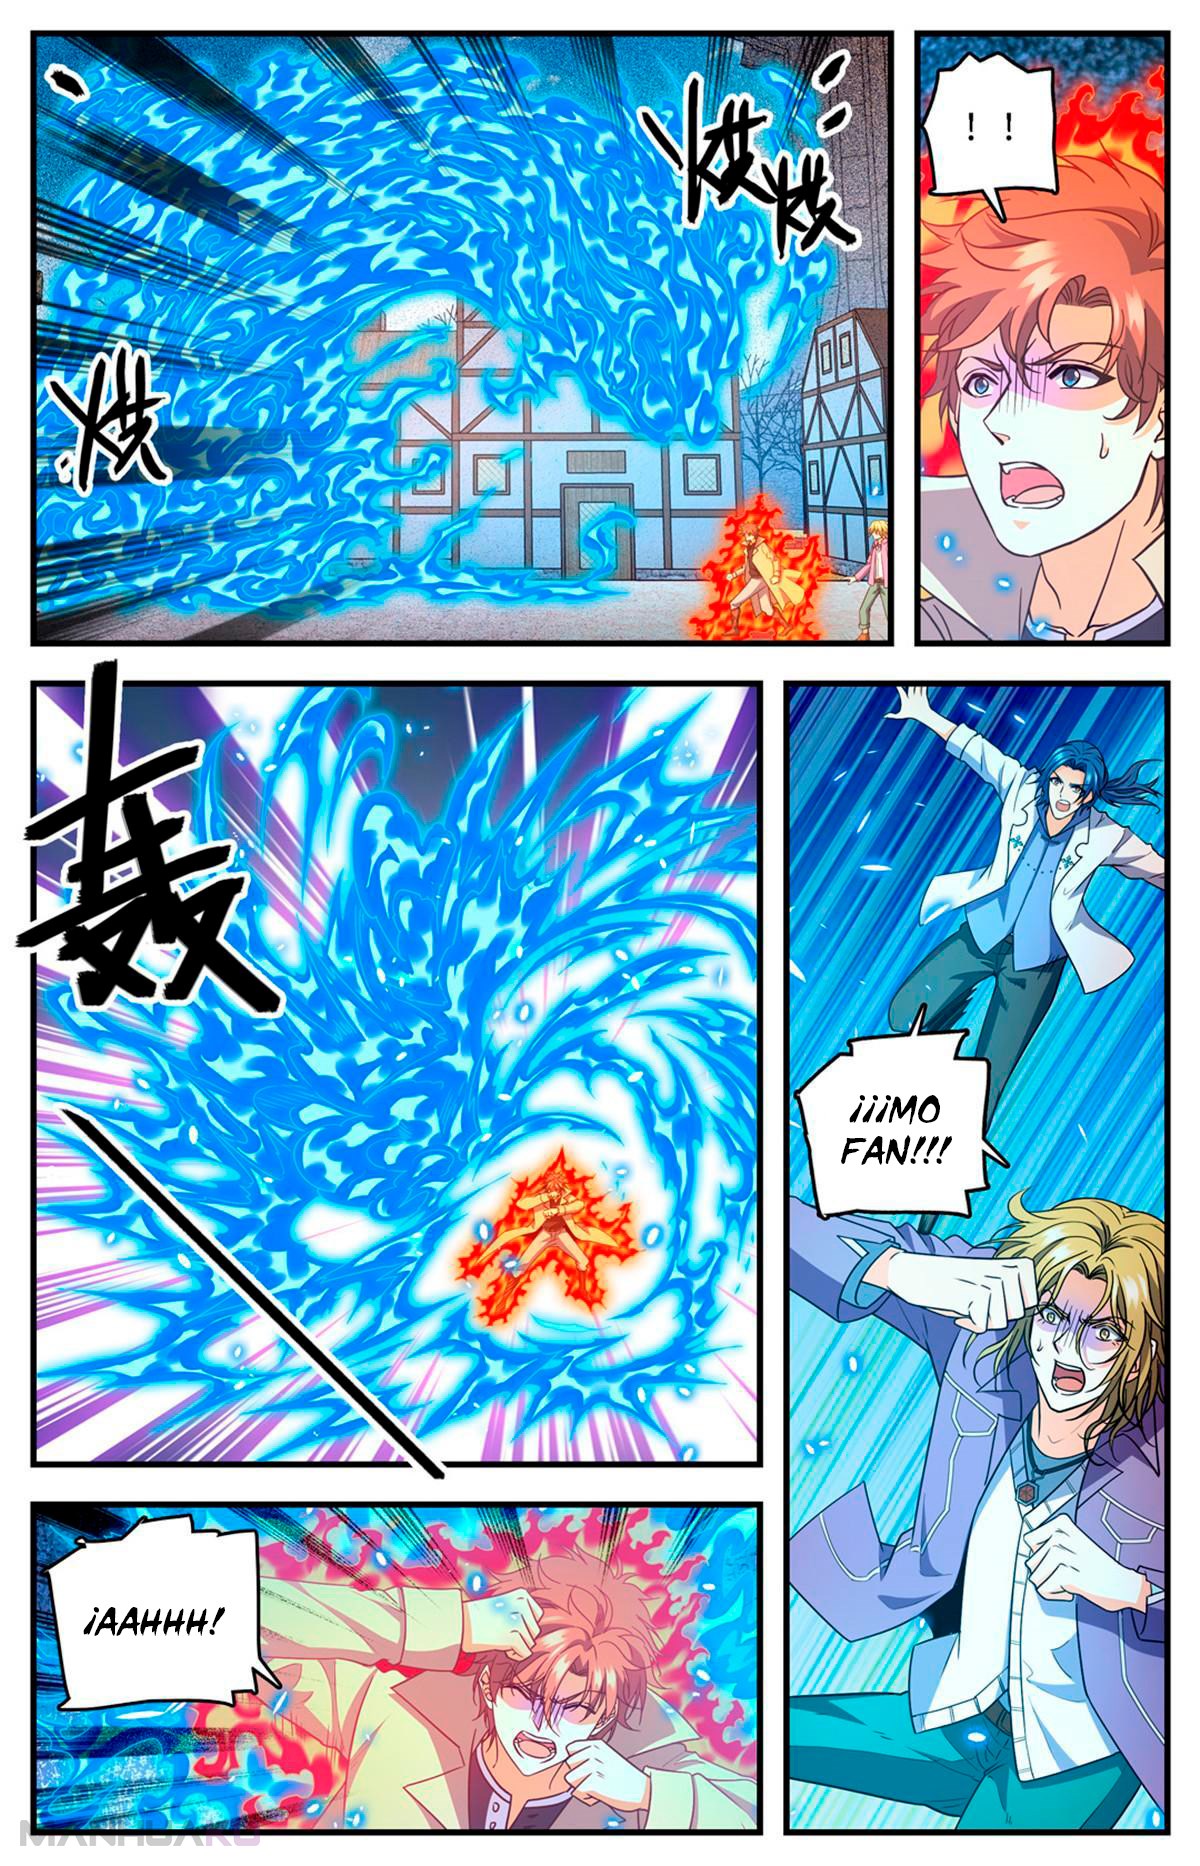 Manga Versatile Mage Chapter 888 image number 3